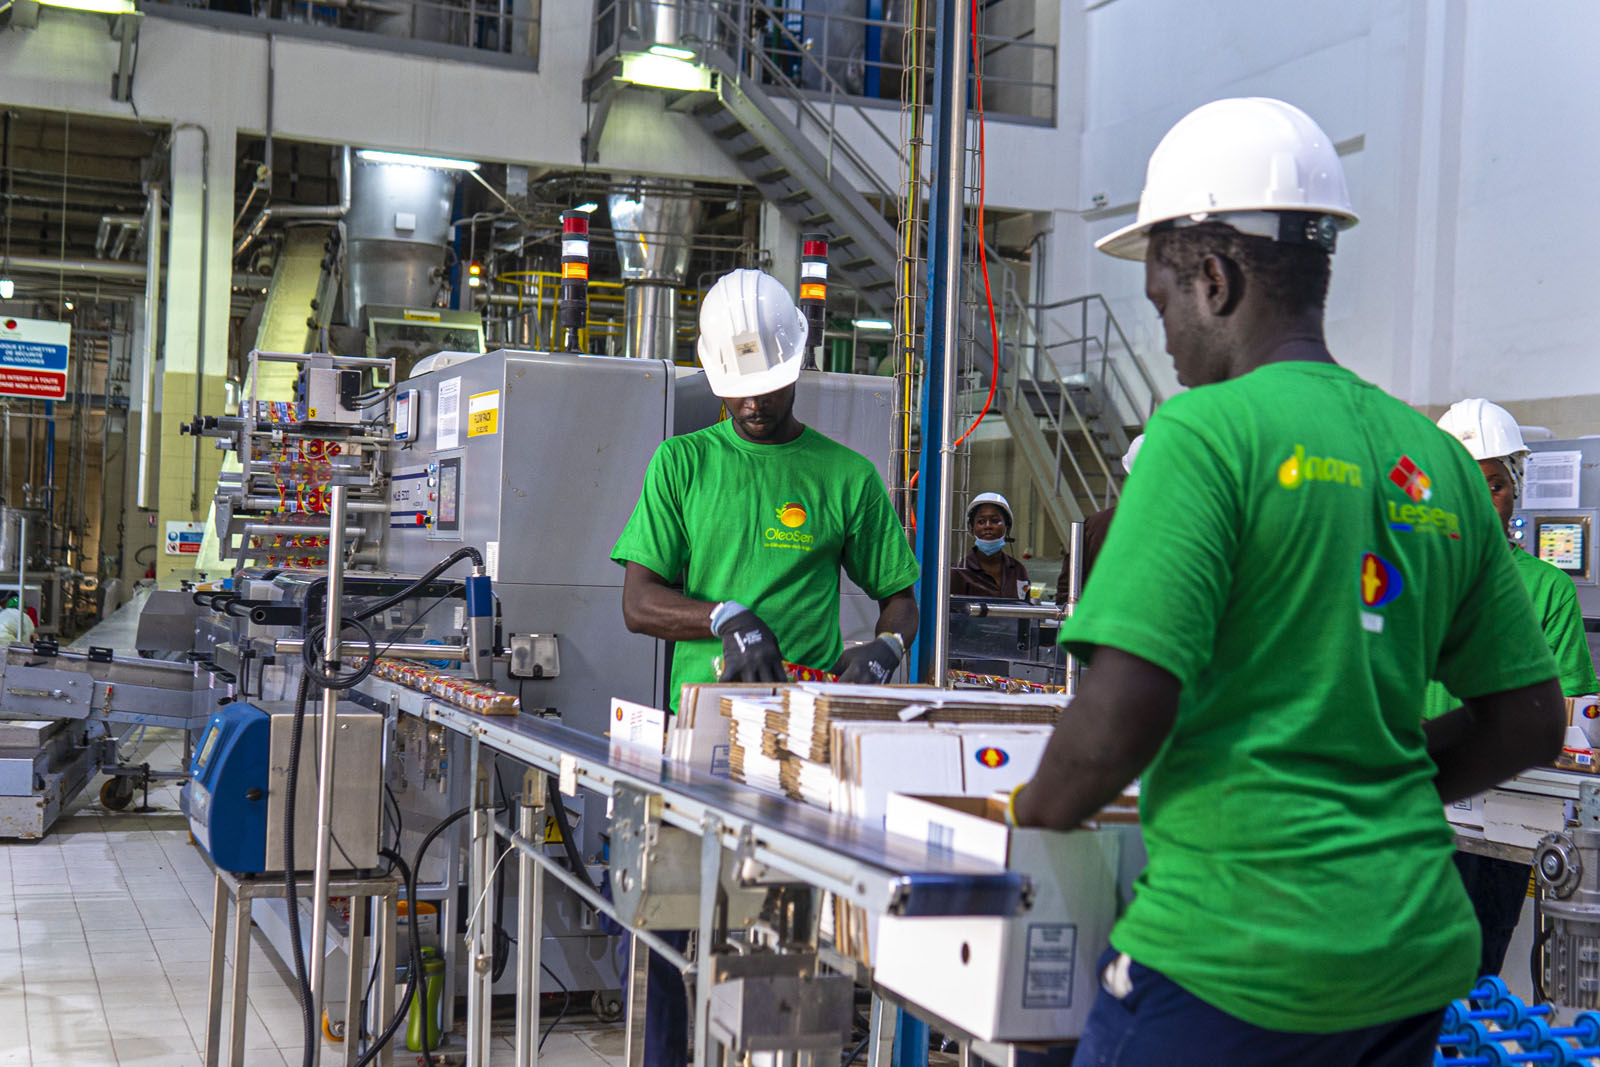 Sénégal : Oleosen se dote d’une nouvelle ligne de production de savon de plus de 30 000 tonnes